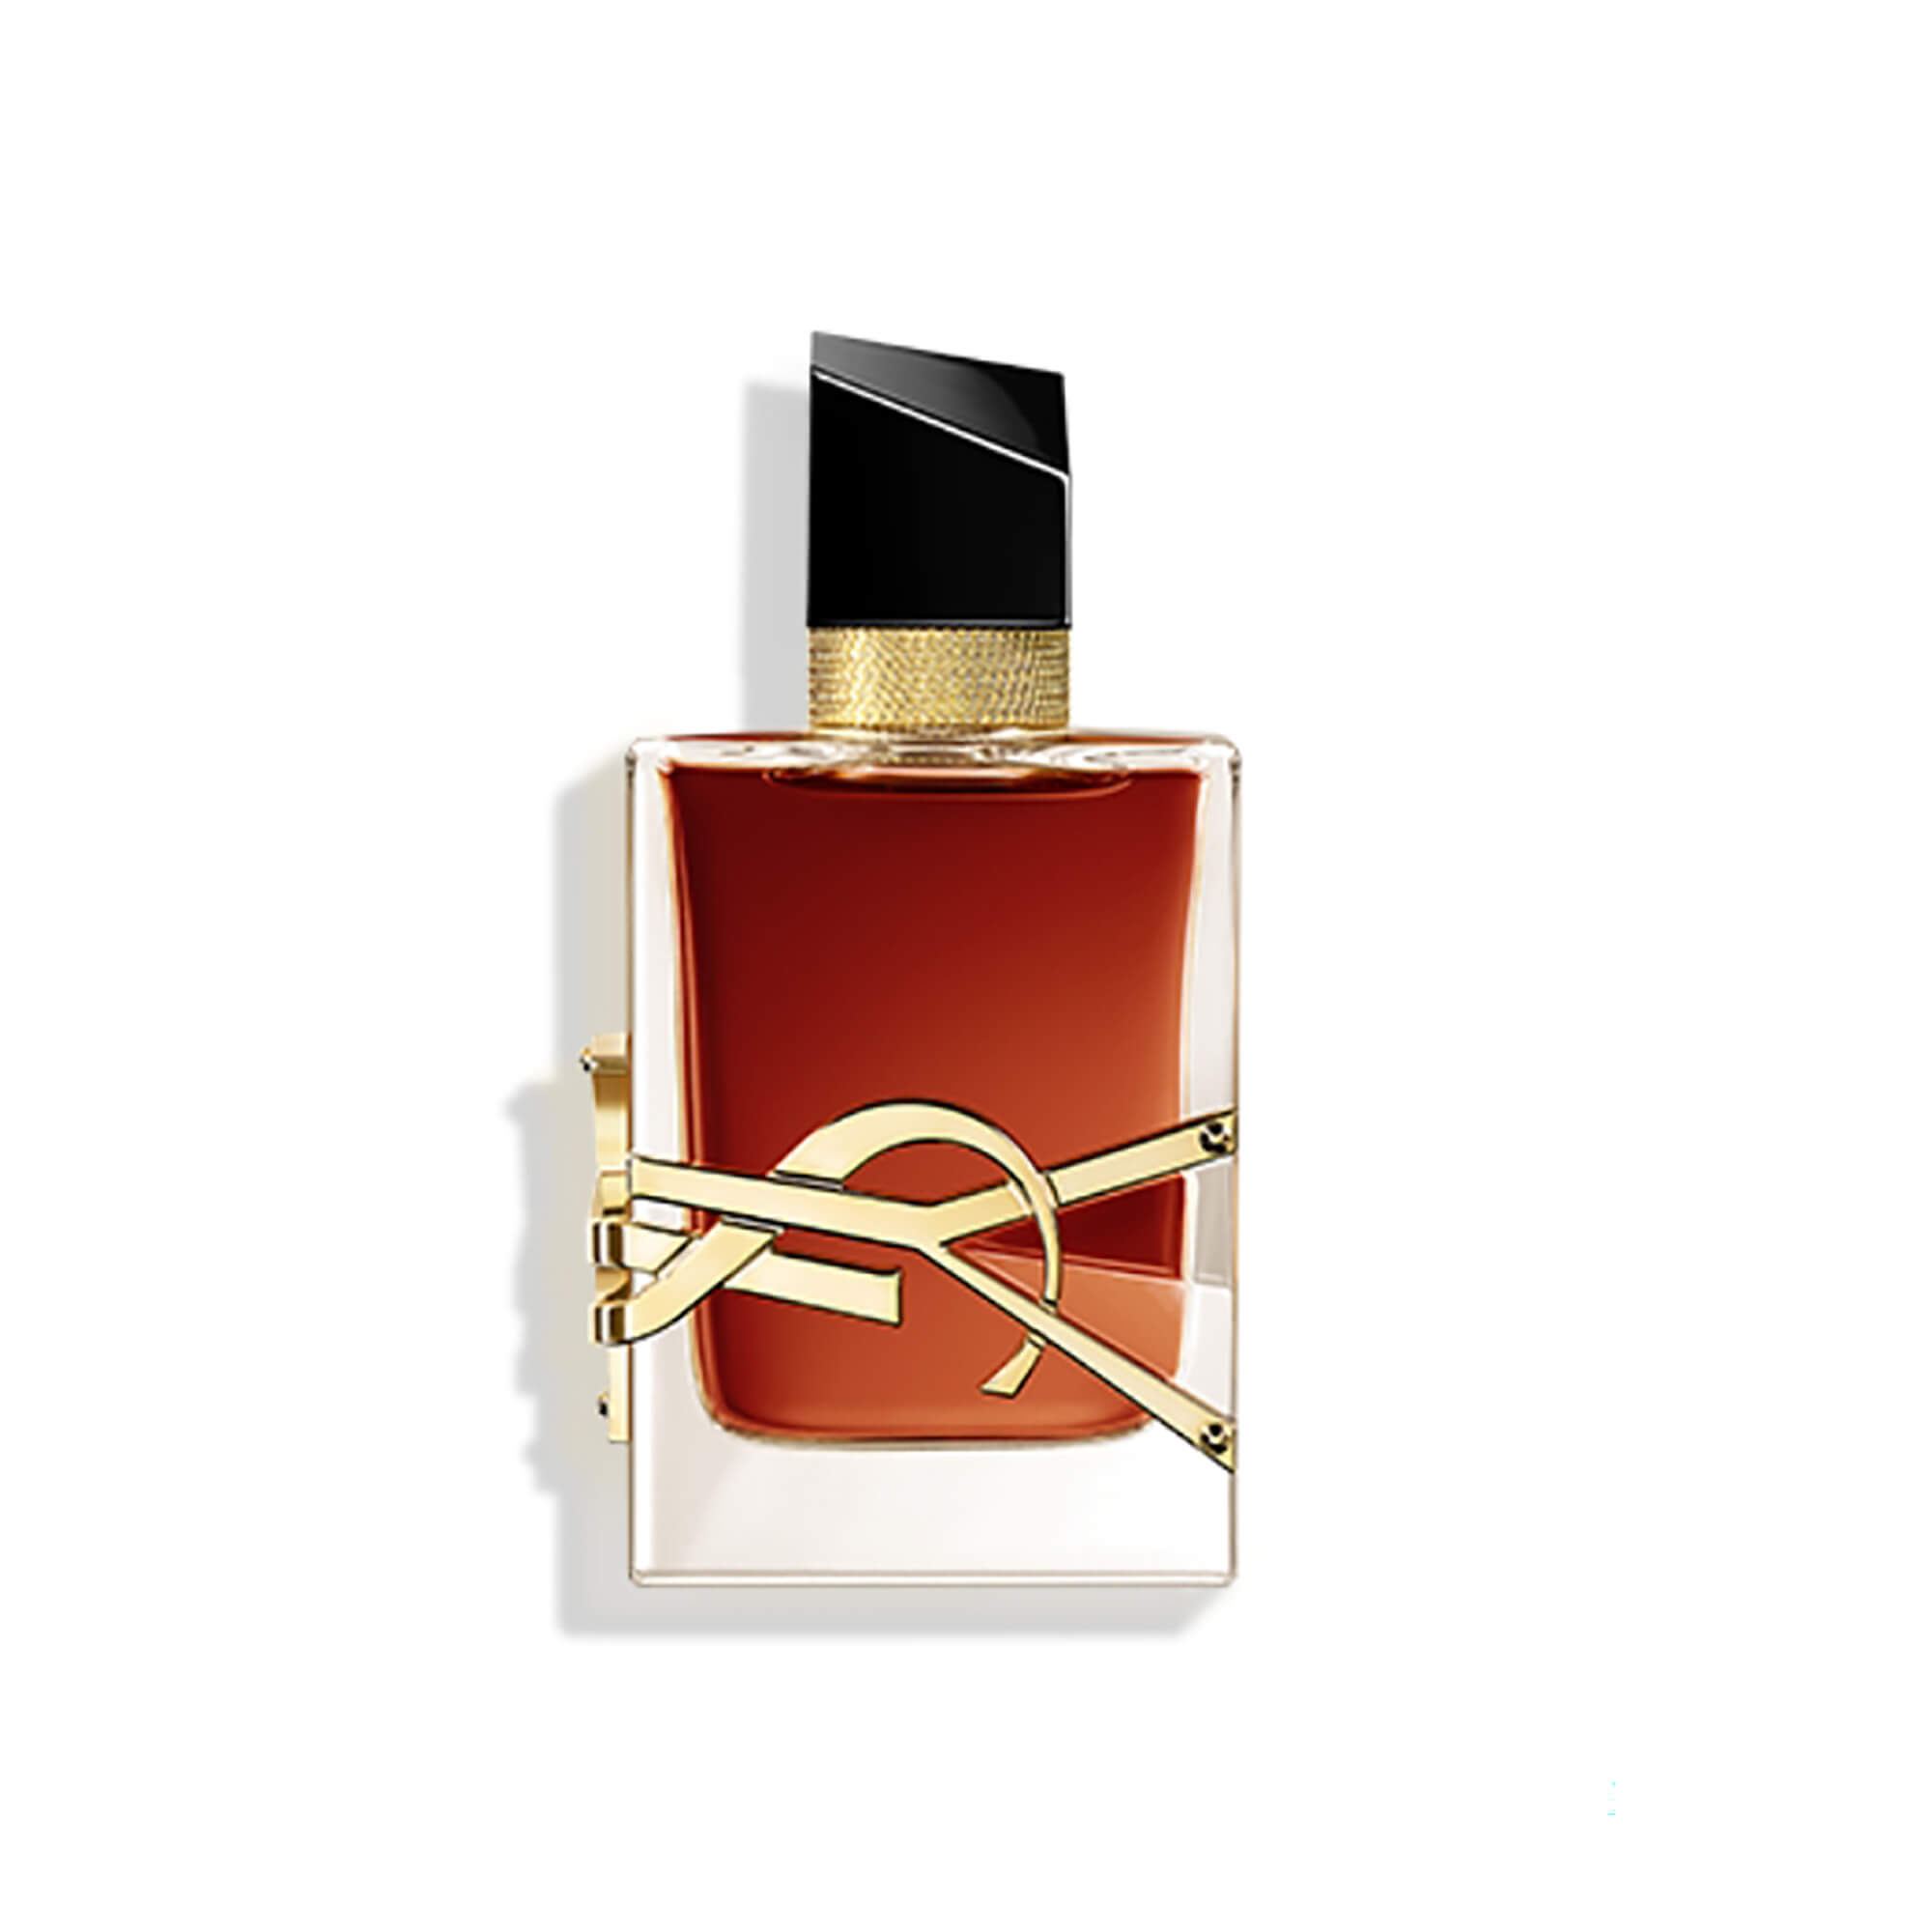 Jual Beli Wanita Parfum Louis Vuitton Wanita Produk